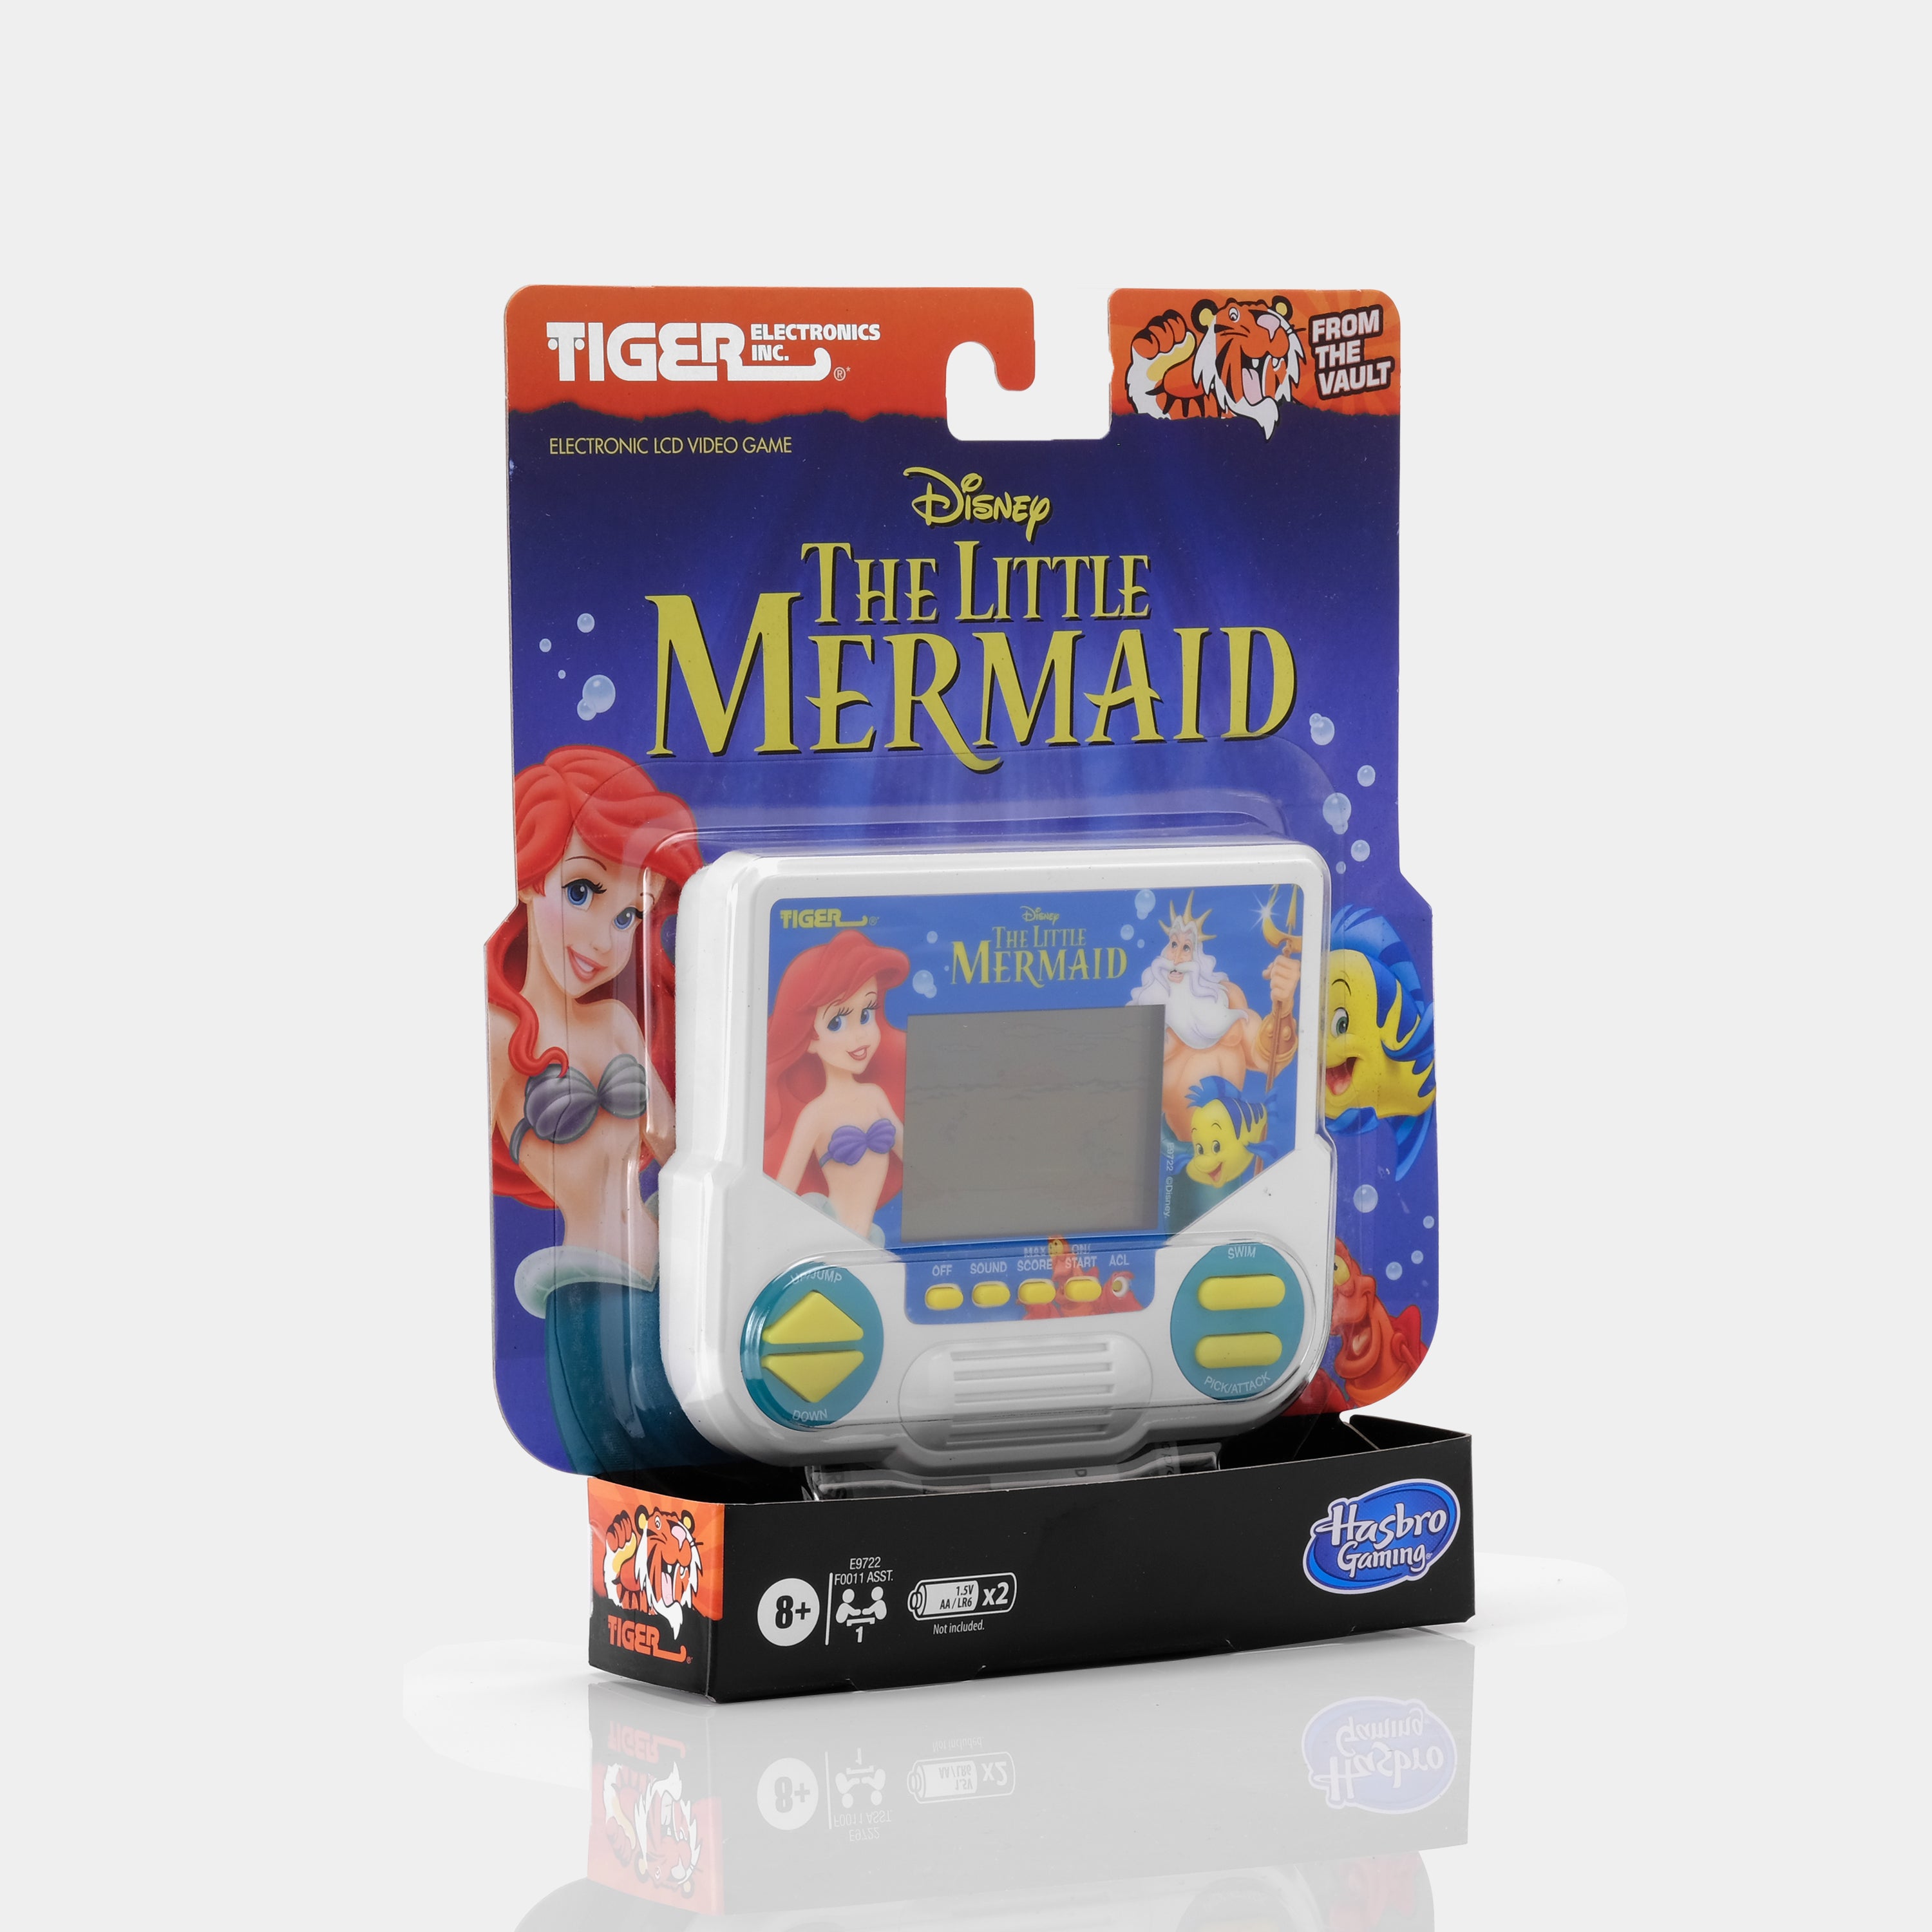 The Little Mermaid Handheld Video Game